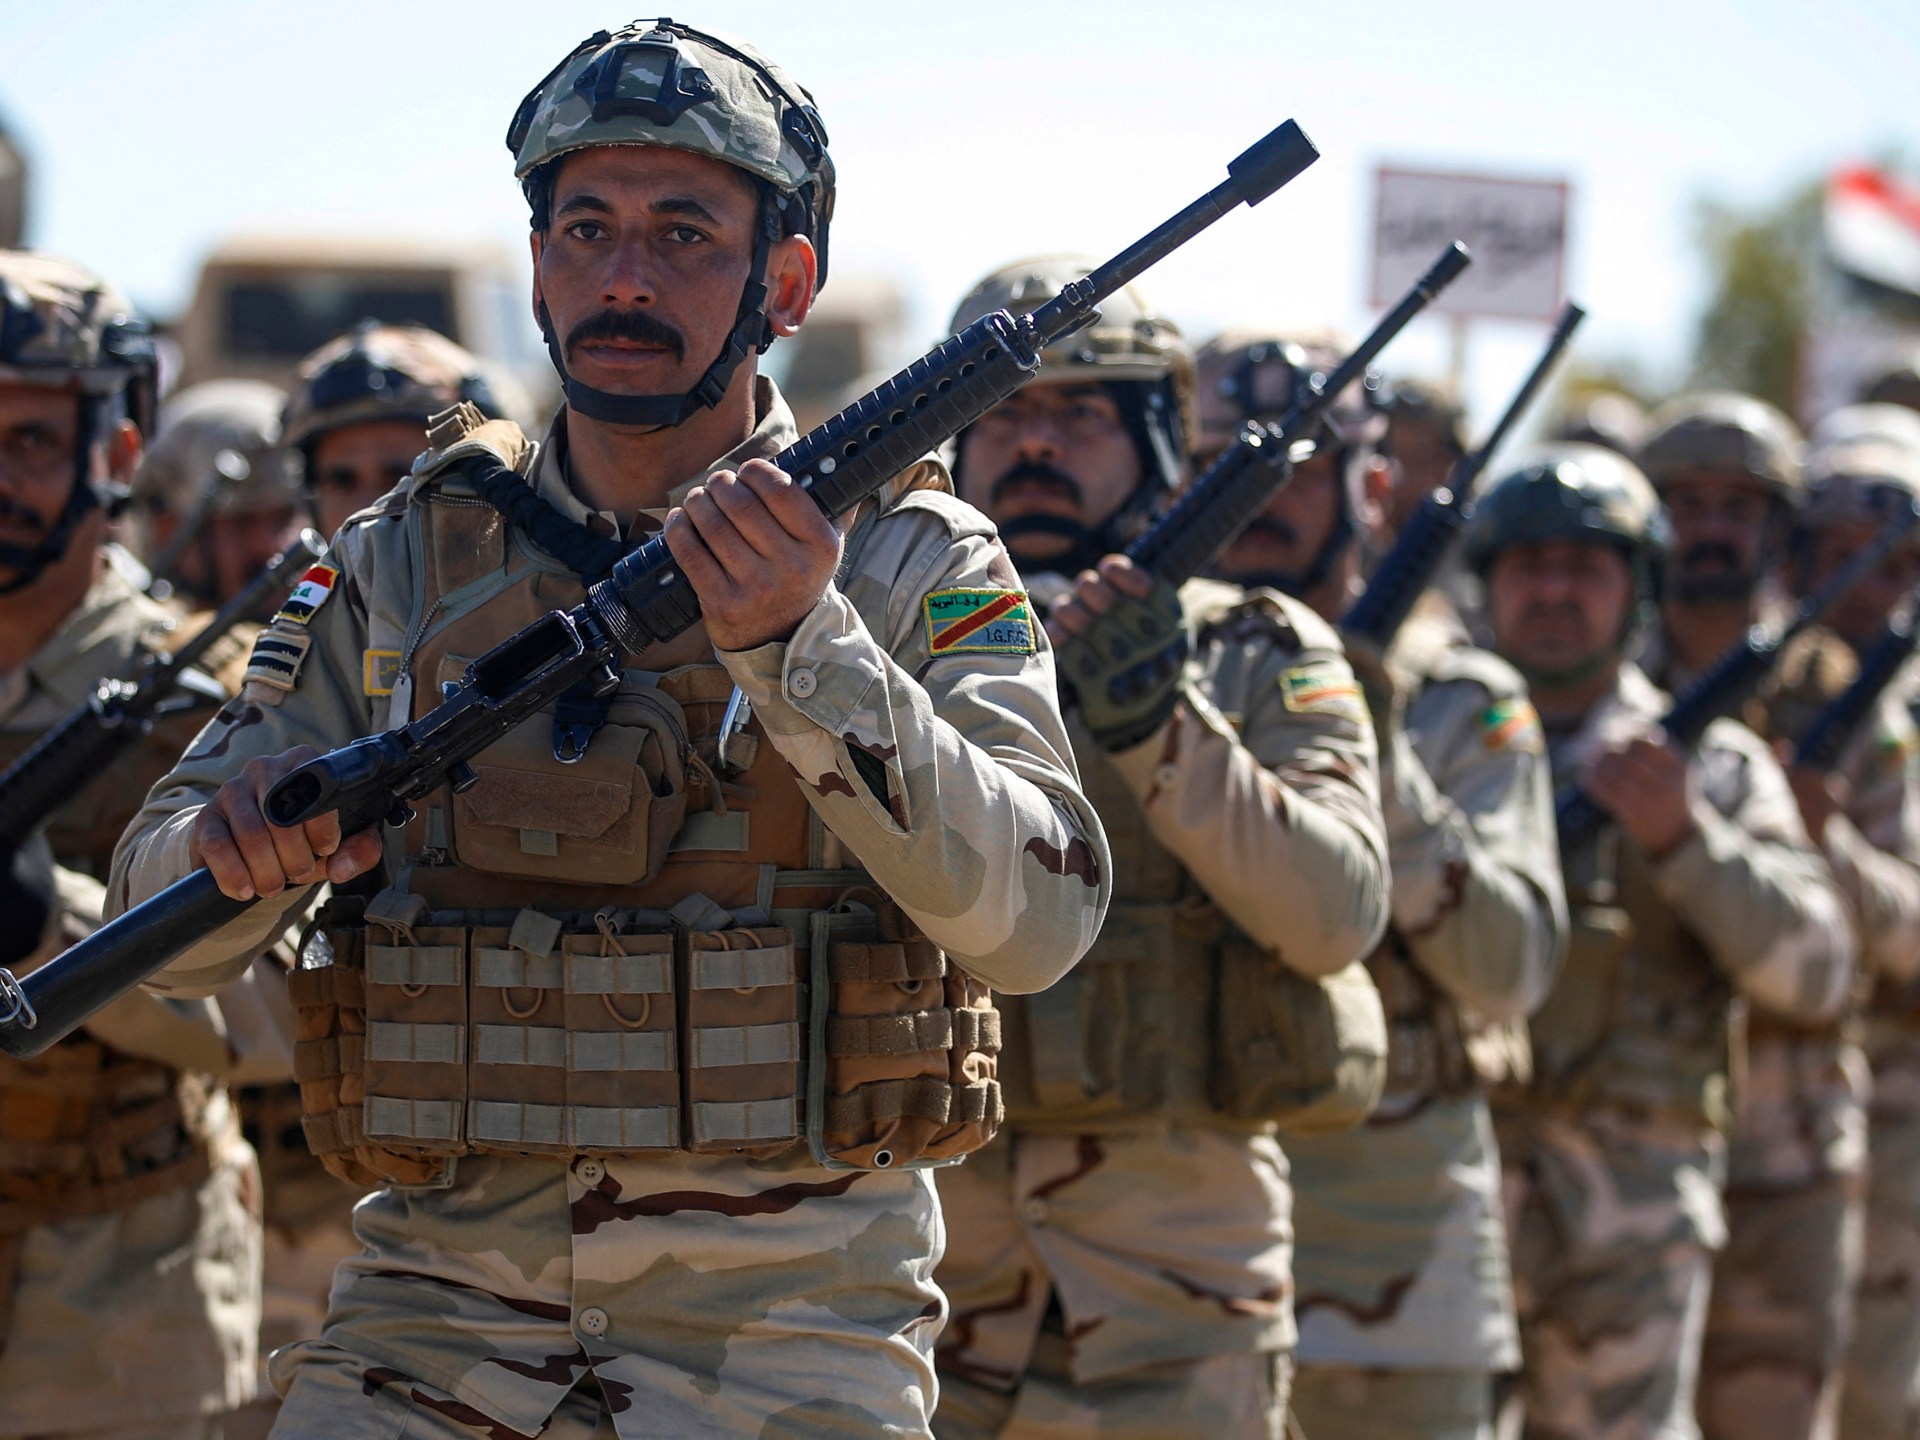 قائد عسكري عراقي يخسر وظيفته ويثير الجدل | البرامج – البوكس نيوز